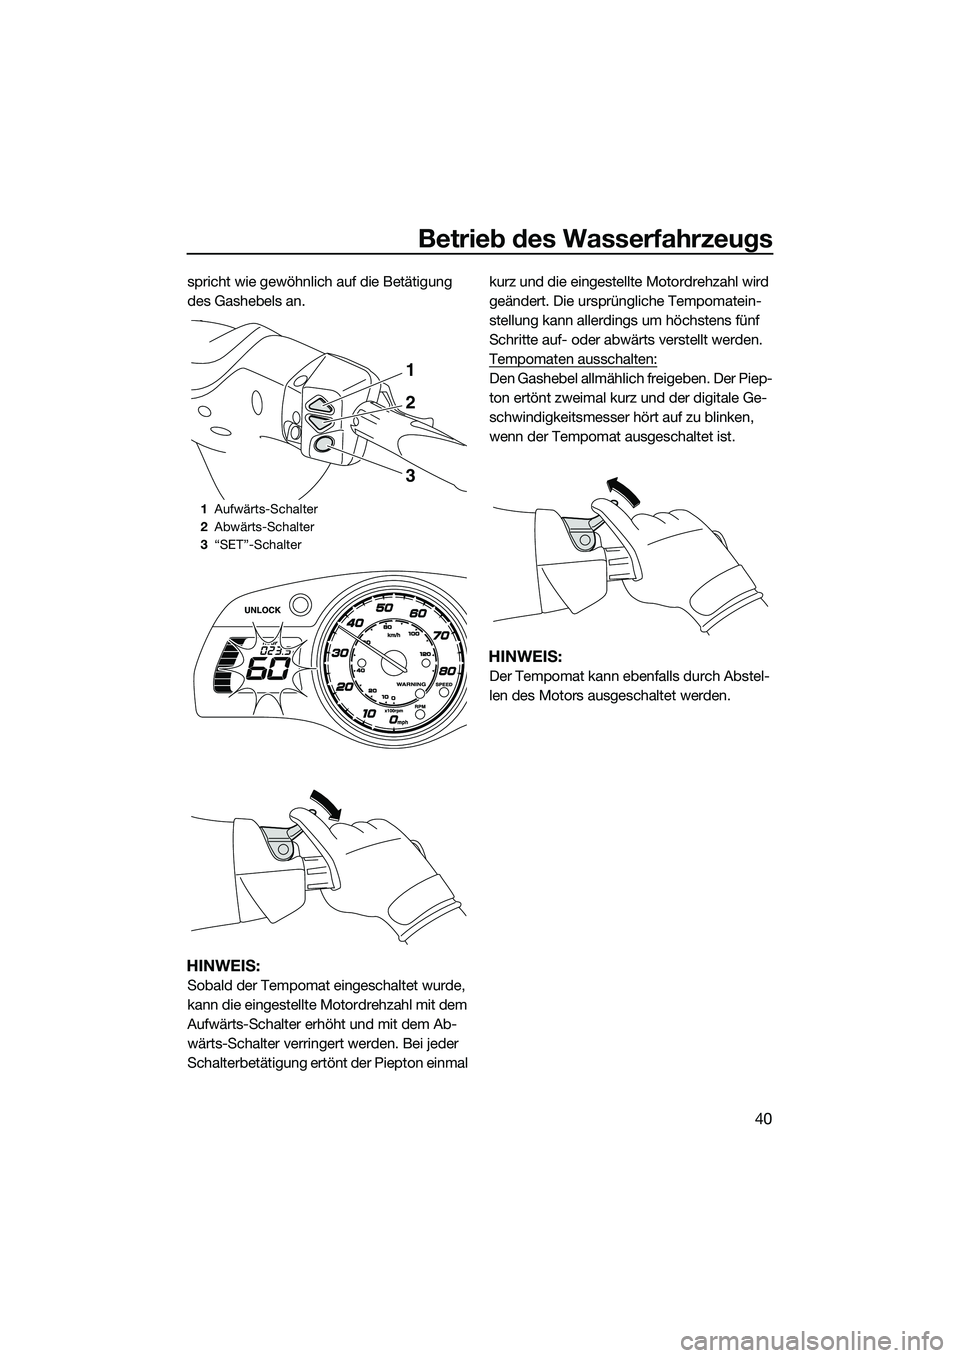 YAMAHA FX HO 2014  Betriebsanleitungen (in German) Betrieb des Wasserfahrzeugs
40
spricht wie gewöhnlich auf die Betätigung 
des Gashebels an.
HINWEIS:
Sobald der Tempomat eingeschaltet wurde, 
kann die eingestellte Motordrehzahl mit dem 
Aufwärts-